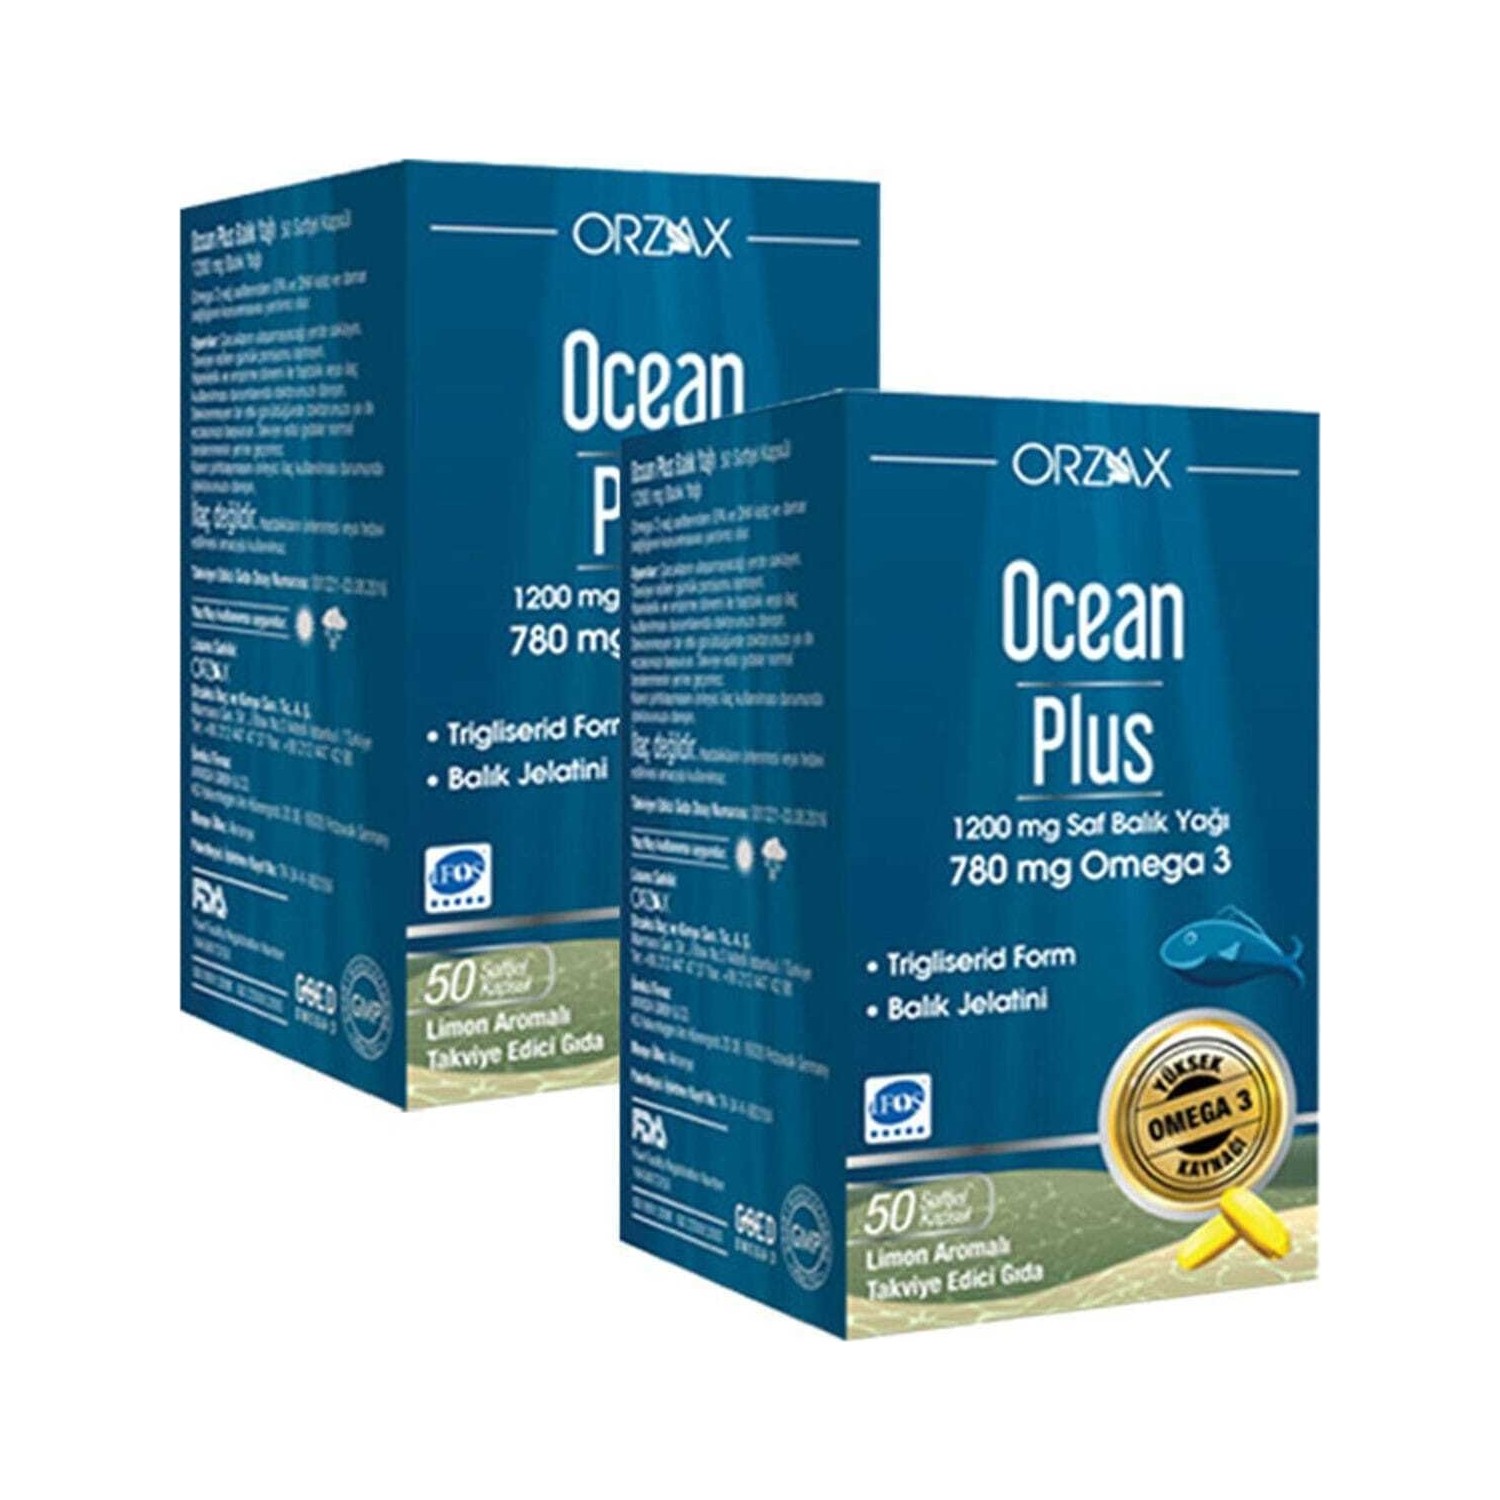 Омега-3 Plus Orzax 1200 мг, 2 упаковки по 50 капсул омега 3 plus orzax 1200 мг 50 капсул